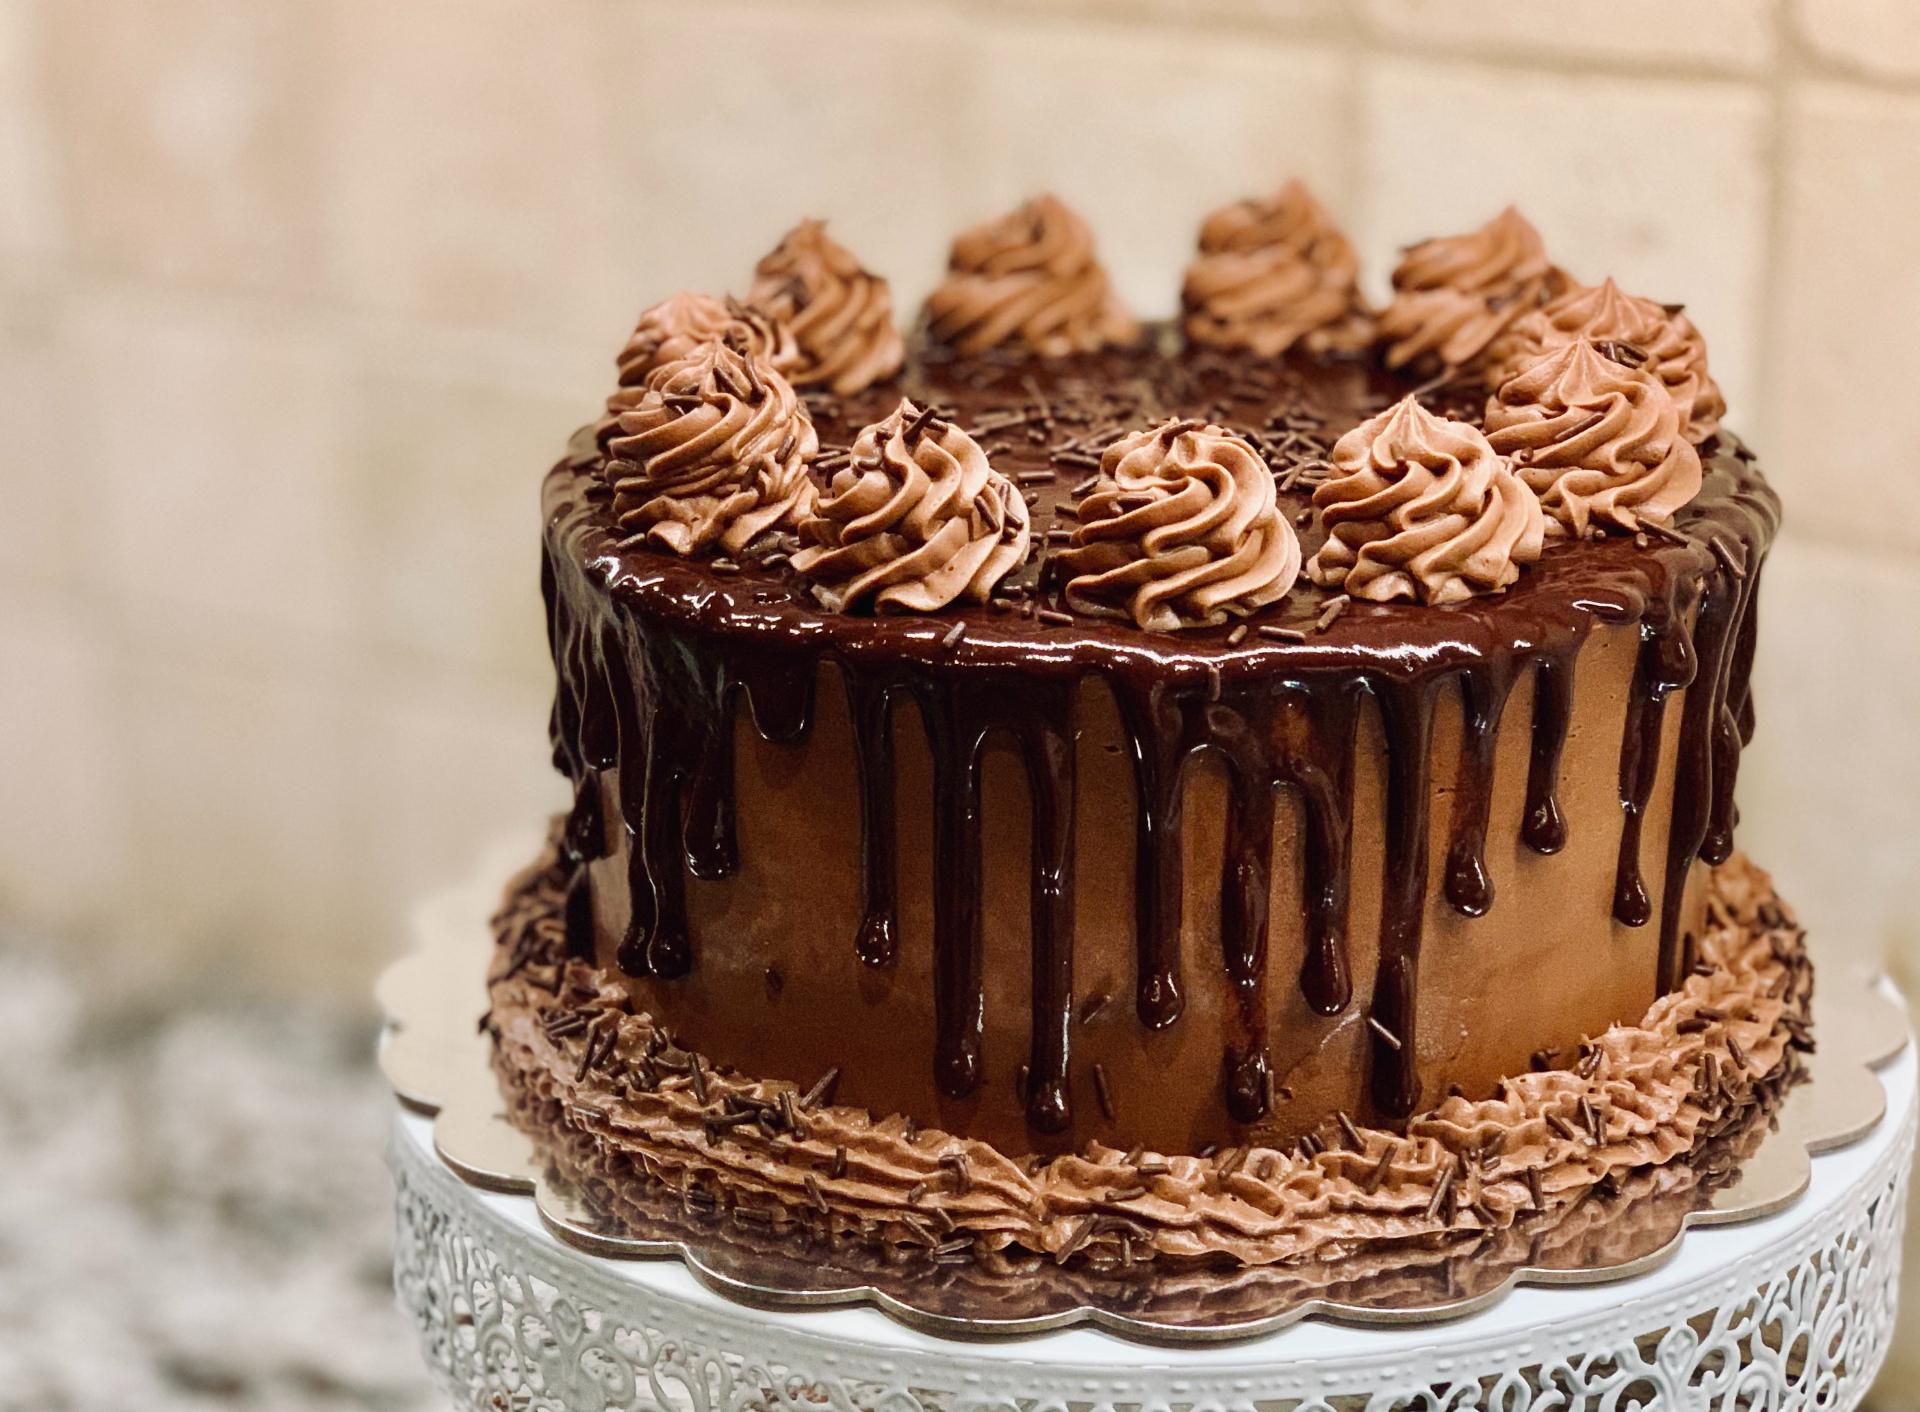 Deliziosa torta al cioccolato. Le torte sono le re dei dolci perché sono le più famose. Se non vendi questo dolce nella tua caffetteria stai perdendo soldi